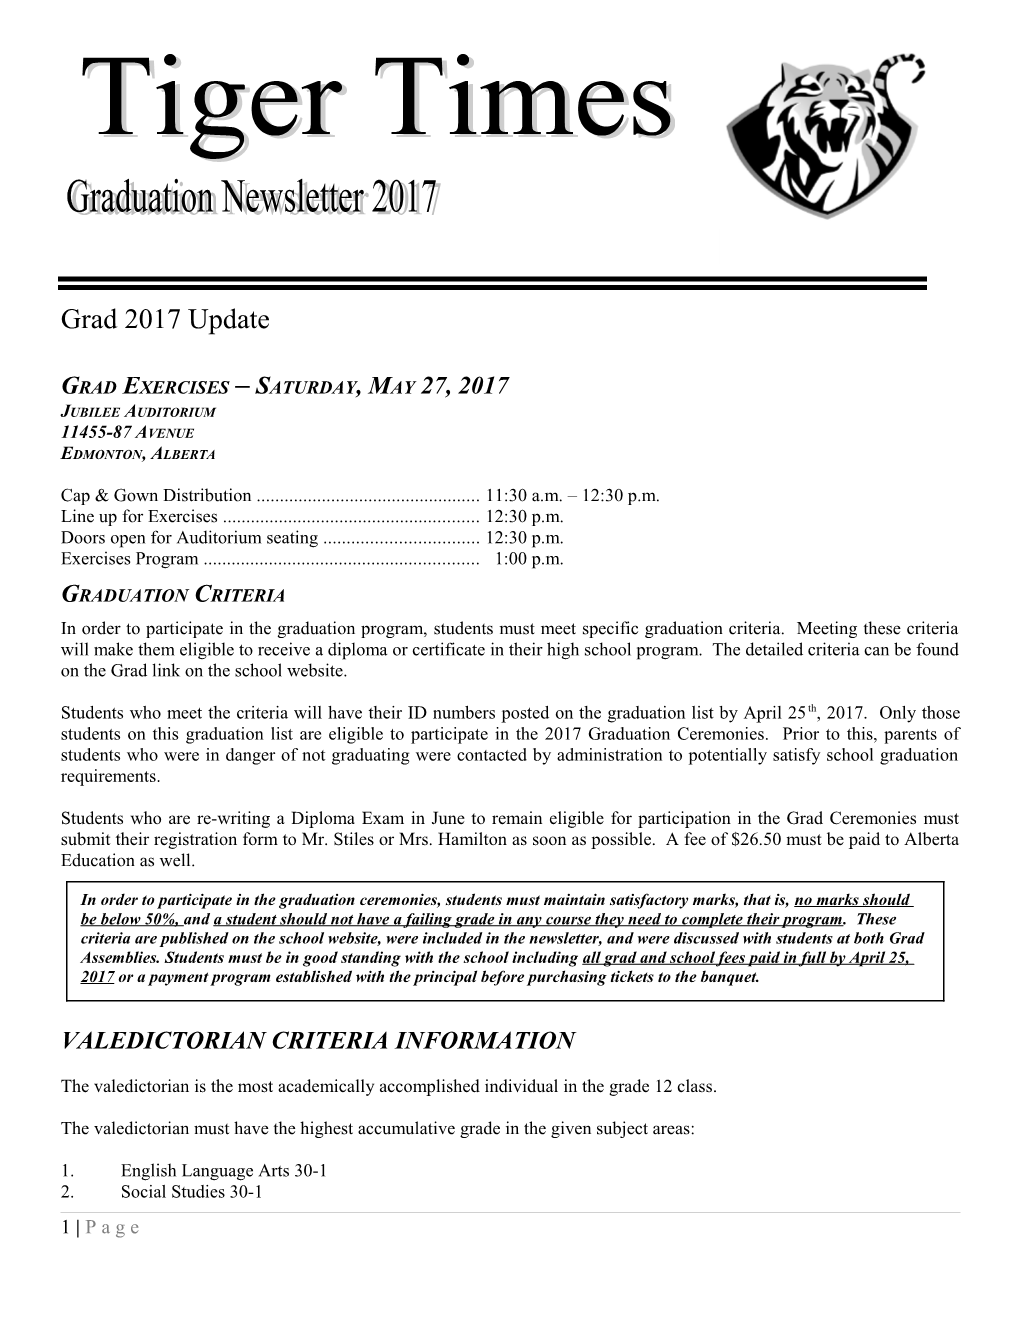 Grad Exercises Saturday, May 27, 2017